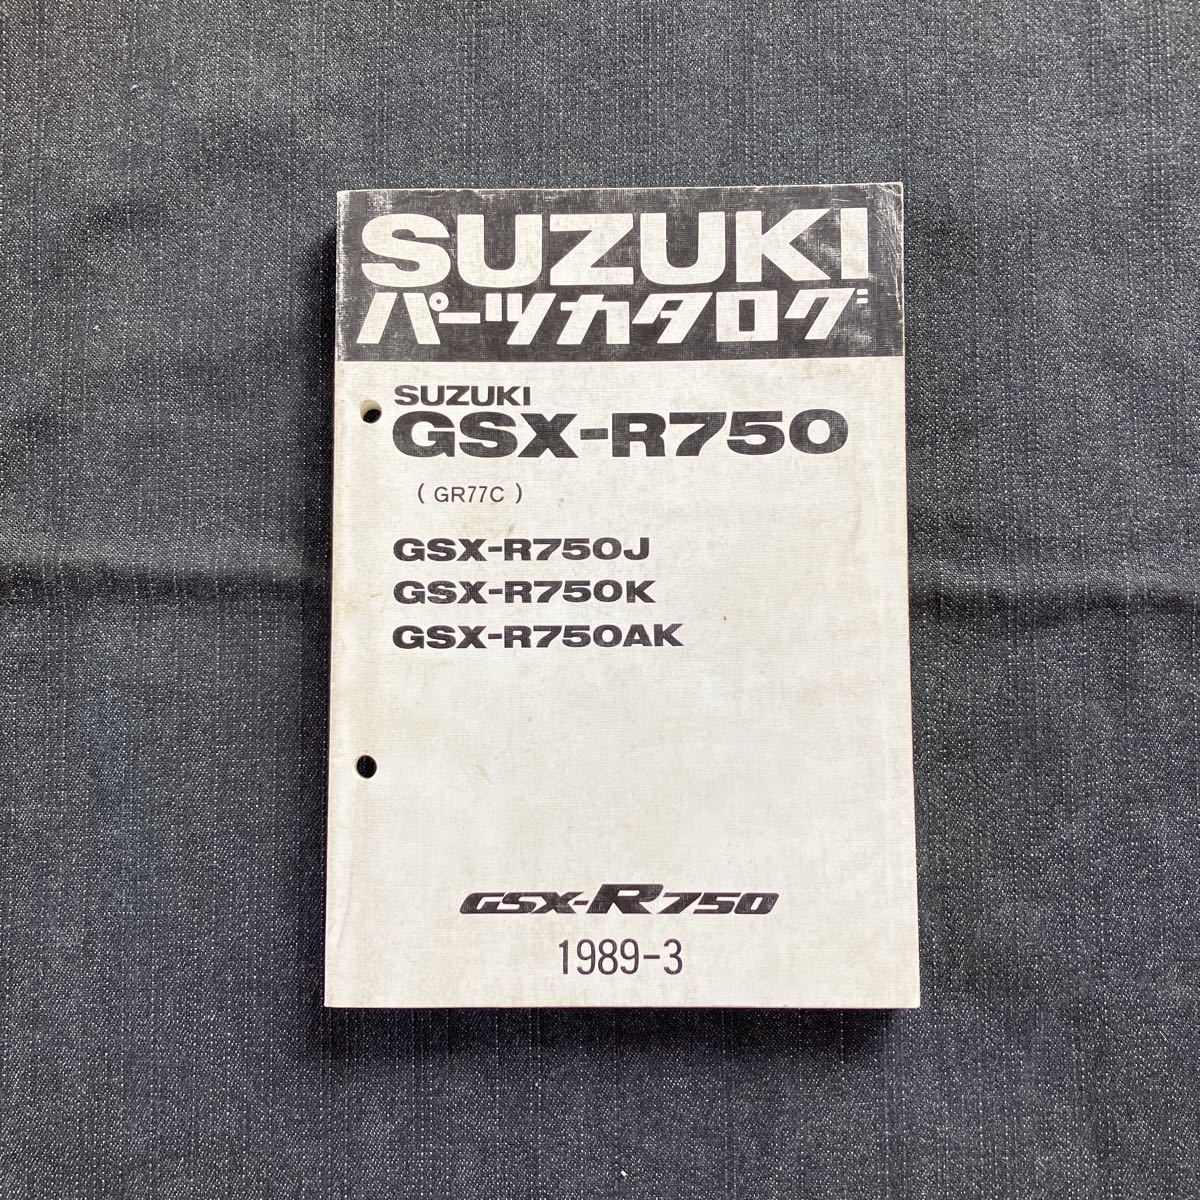 p062002 送料無料即決 スズキ GSX-R750 GR77C パーツカタログ 1989年3月 GSX-R750J GSX-R750K GSX-R750AK_画像1